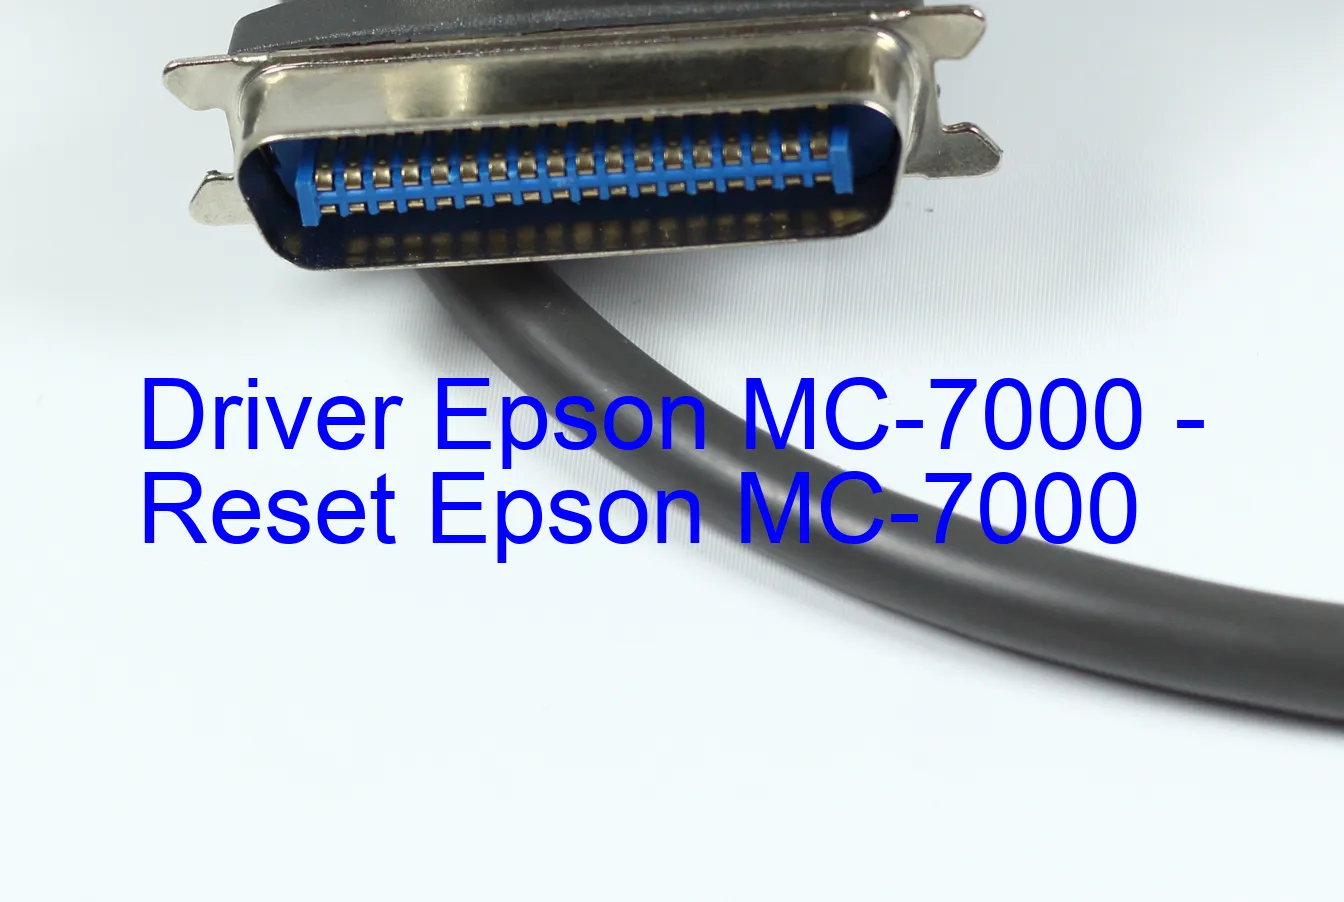 Epson MC-7000のドライバー、Epson MC-7000のリセットソフトウェア